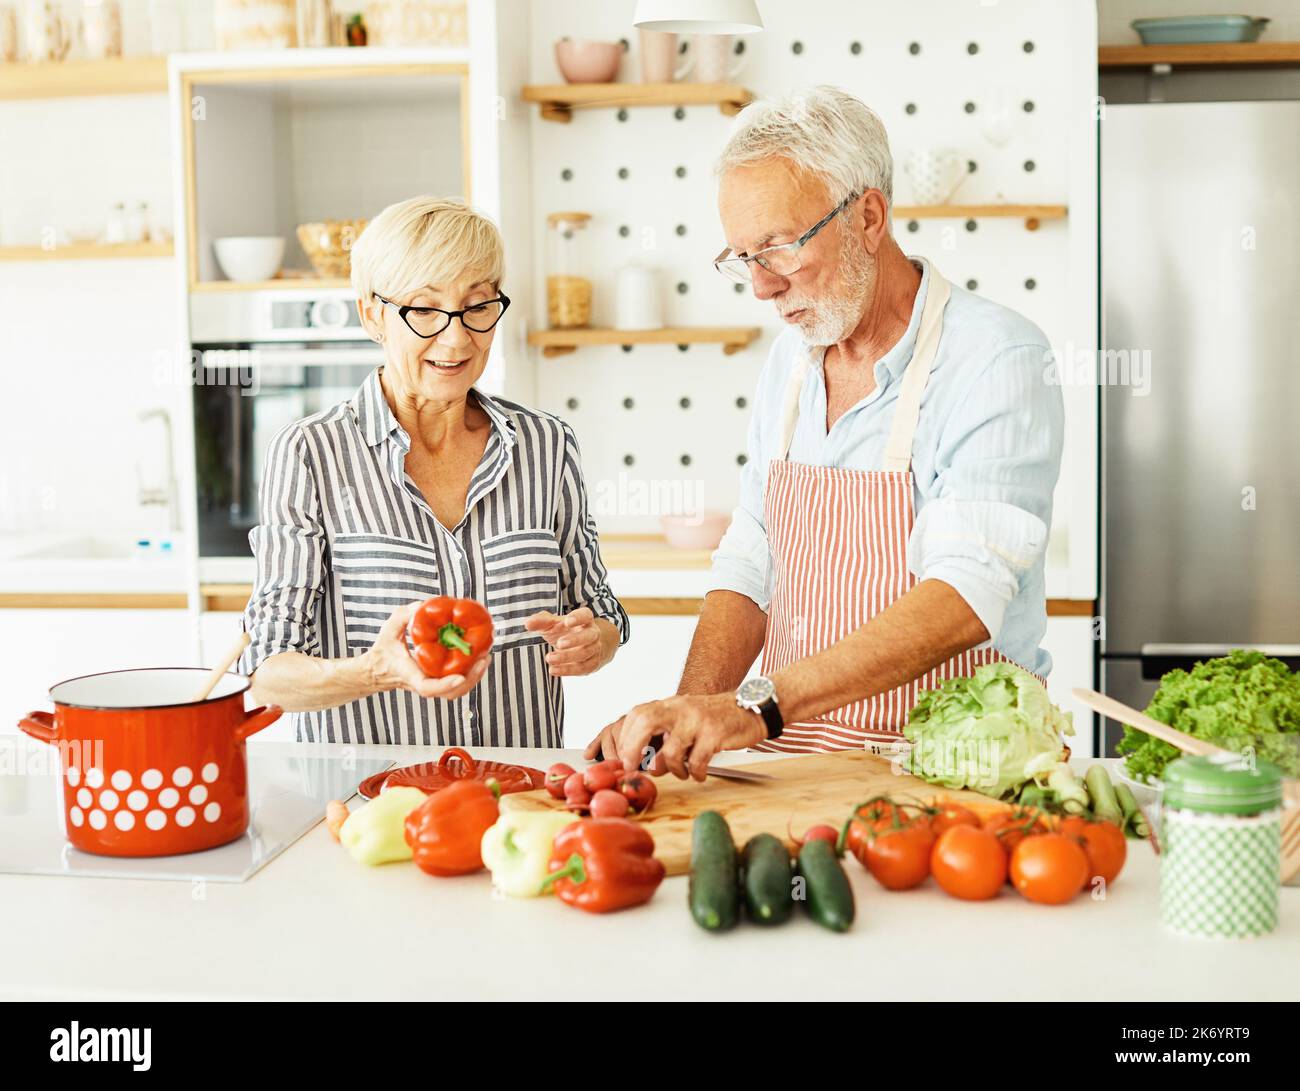 Liebe Küche Senior Frau Mann Paar Heim Ruhestand glückliches Essen lächelnd Mann Frau zusammen Person Stockfoto